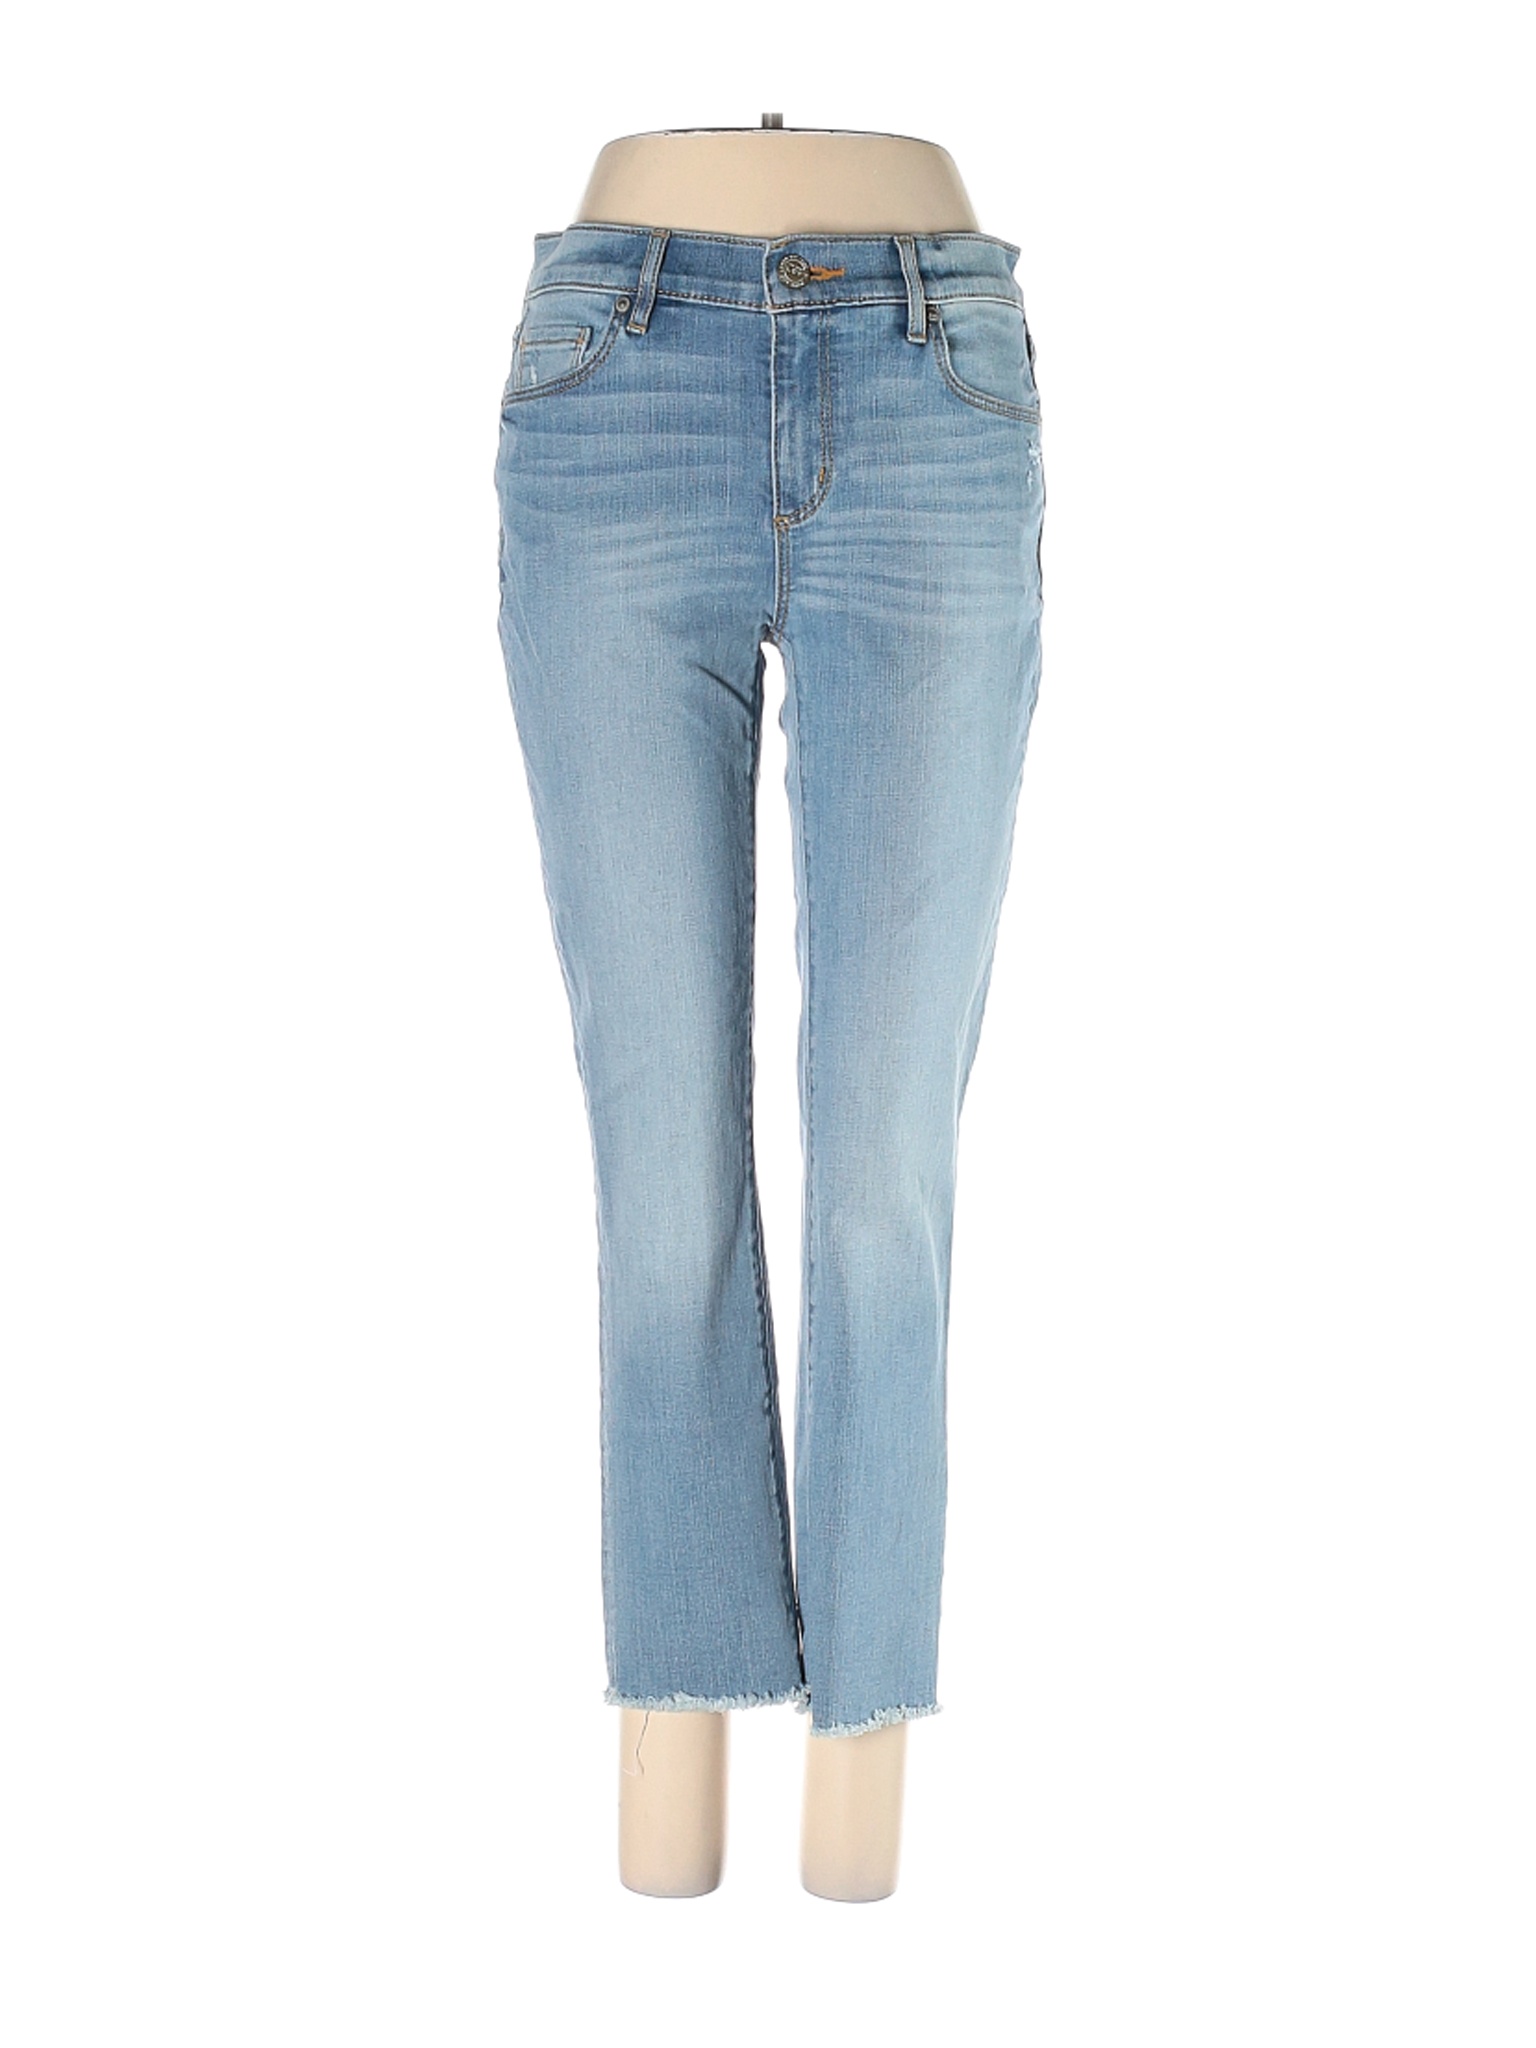 Ann Taylor LOFT Women Blue Jeans 4 | eBay